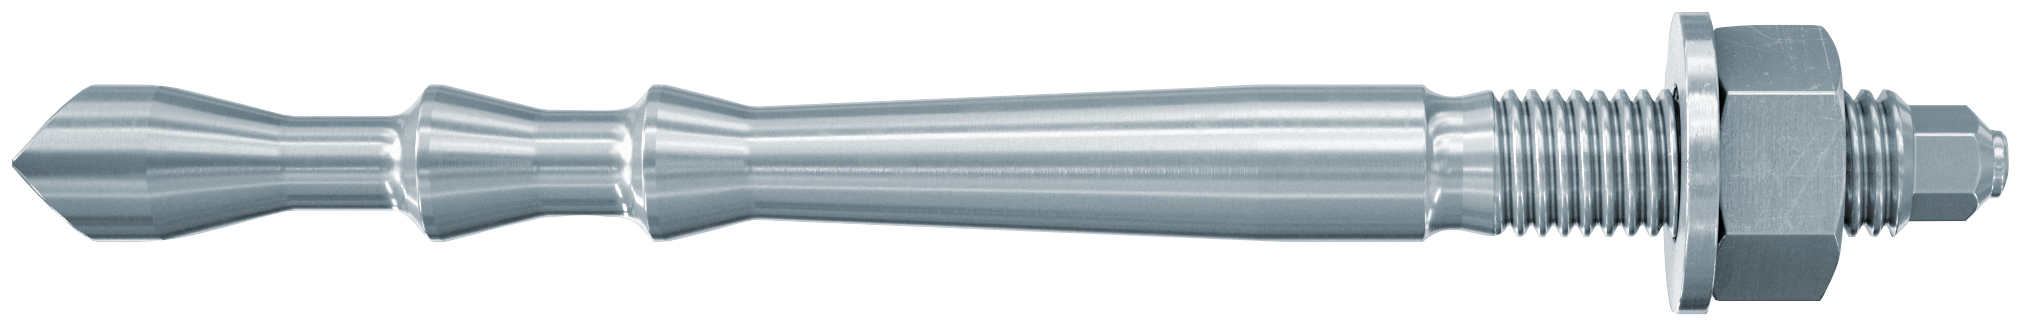 fischer Barra multicono in acciaio FHB II-A L M12 X 100/25 per ancorante chimico FIS HB (1 Pz.) Barra multicono lunga in acciaio zincato classe 8.8. Massime prestazioni a trazione in calcestruzzo fessurato e a ridotte distanze dai bordi..